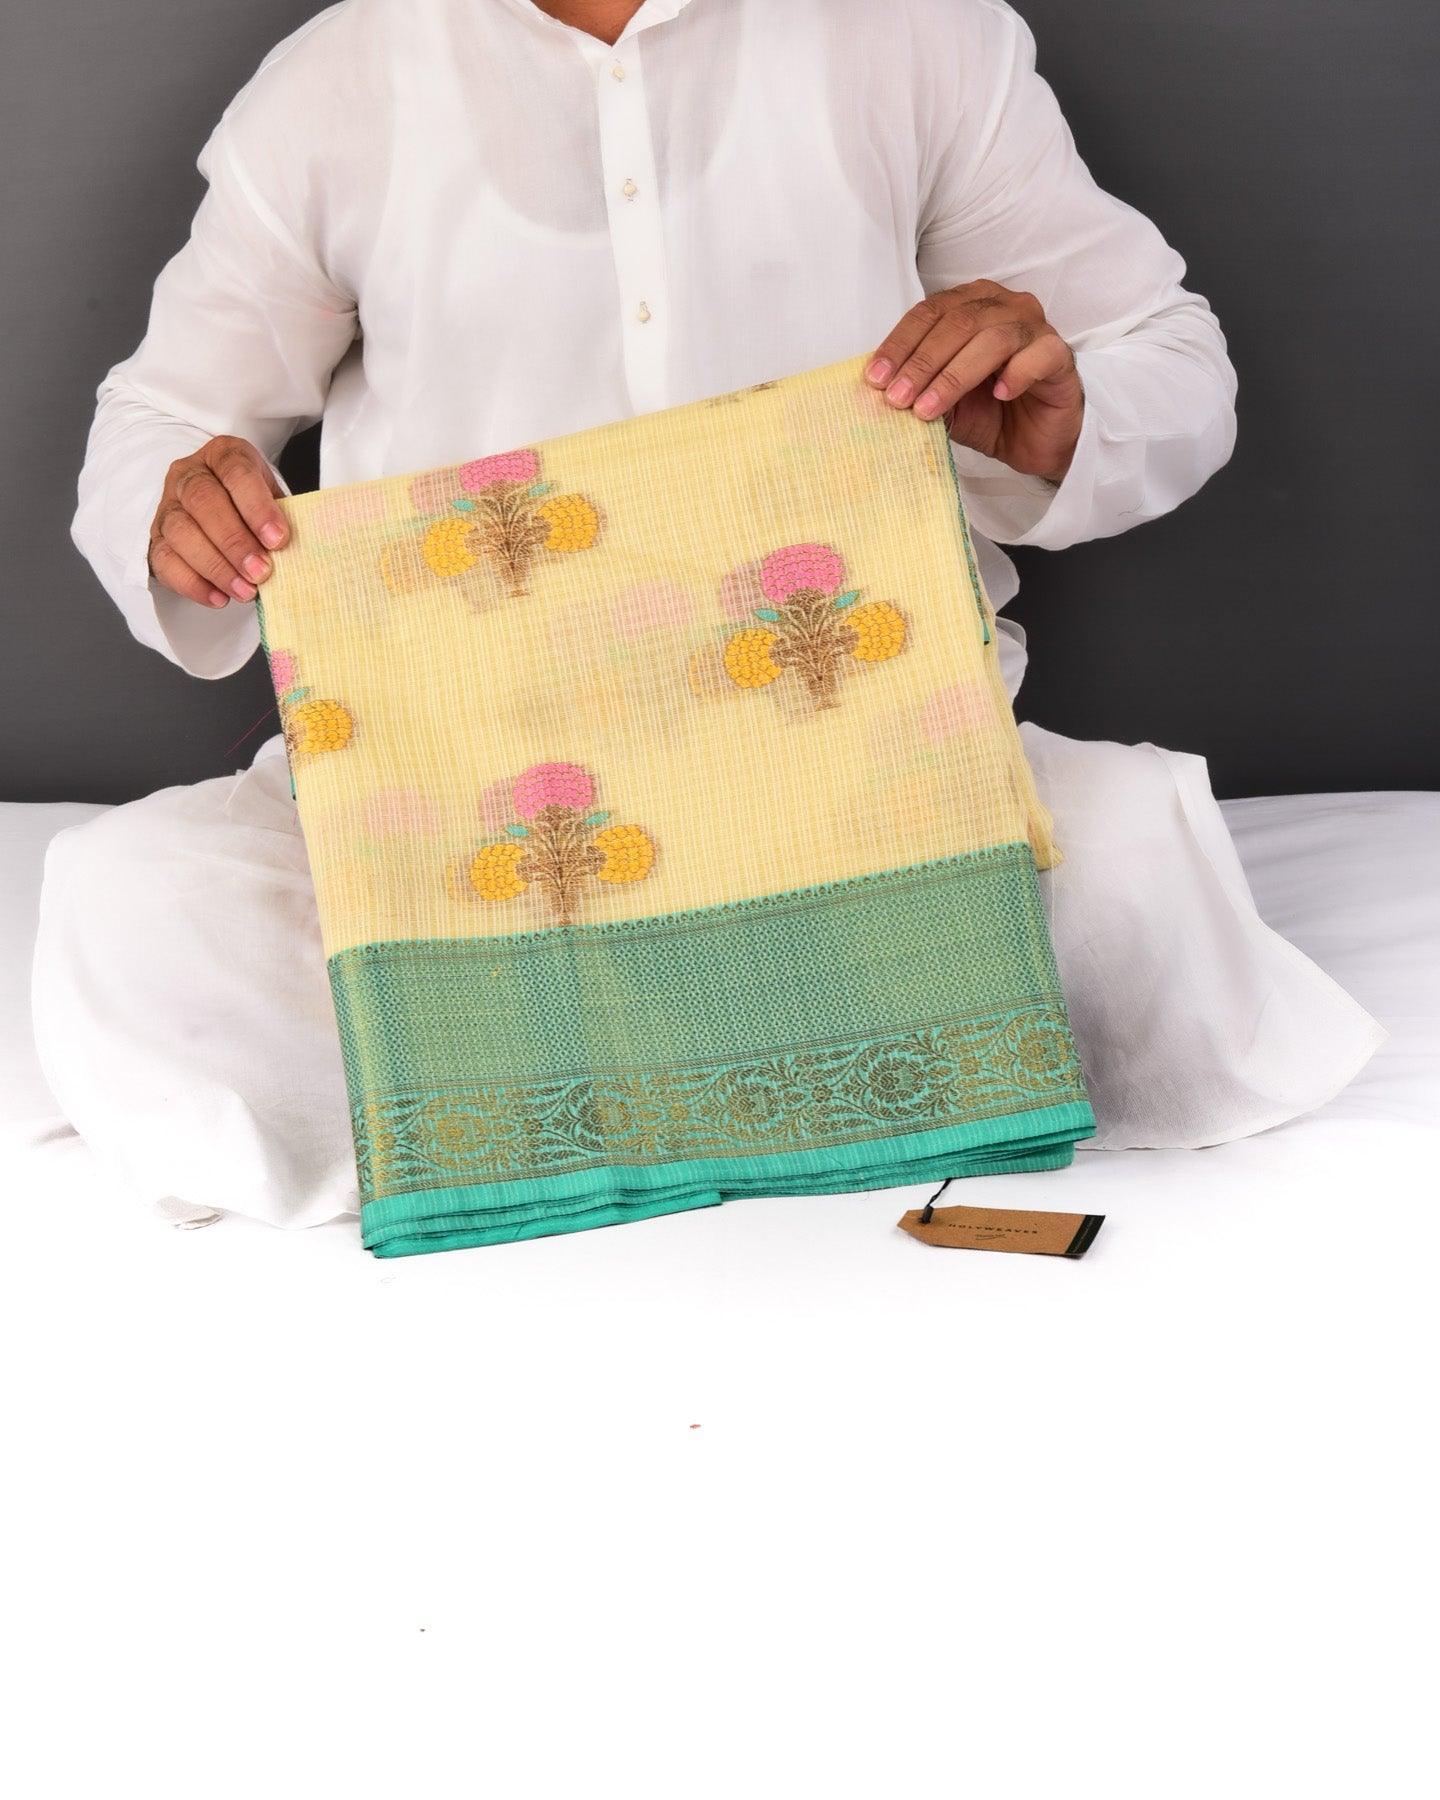 Cream Banarasi Check Texture 3-Color Weave Cutwork Brocade Woven Cotton Silk Saree - By HolyWeaves, Benares